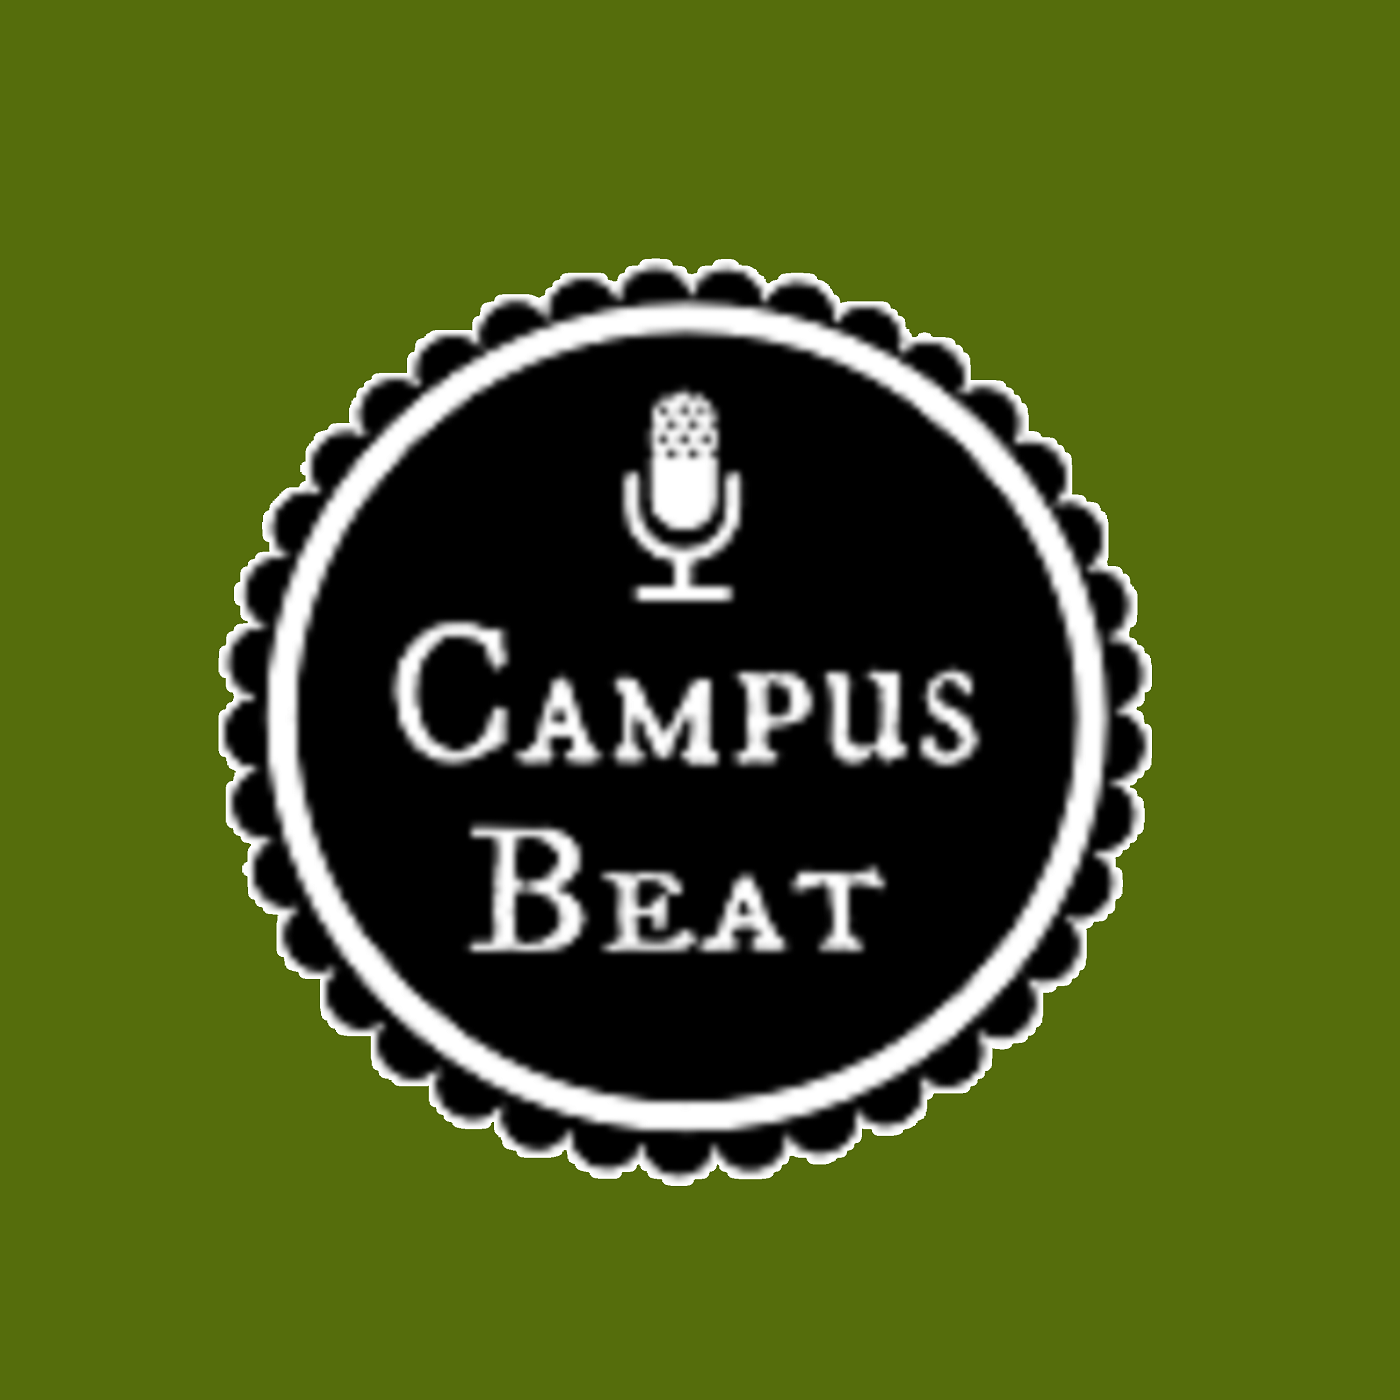 Campus Beat logo